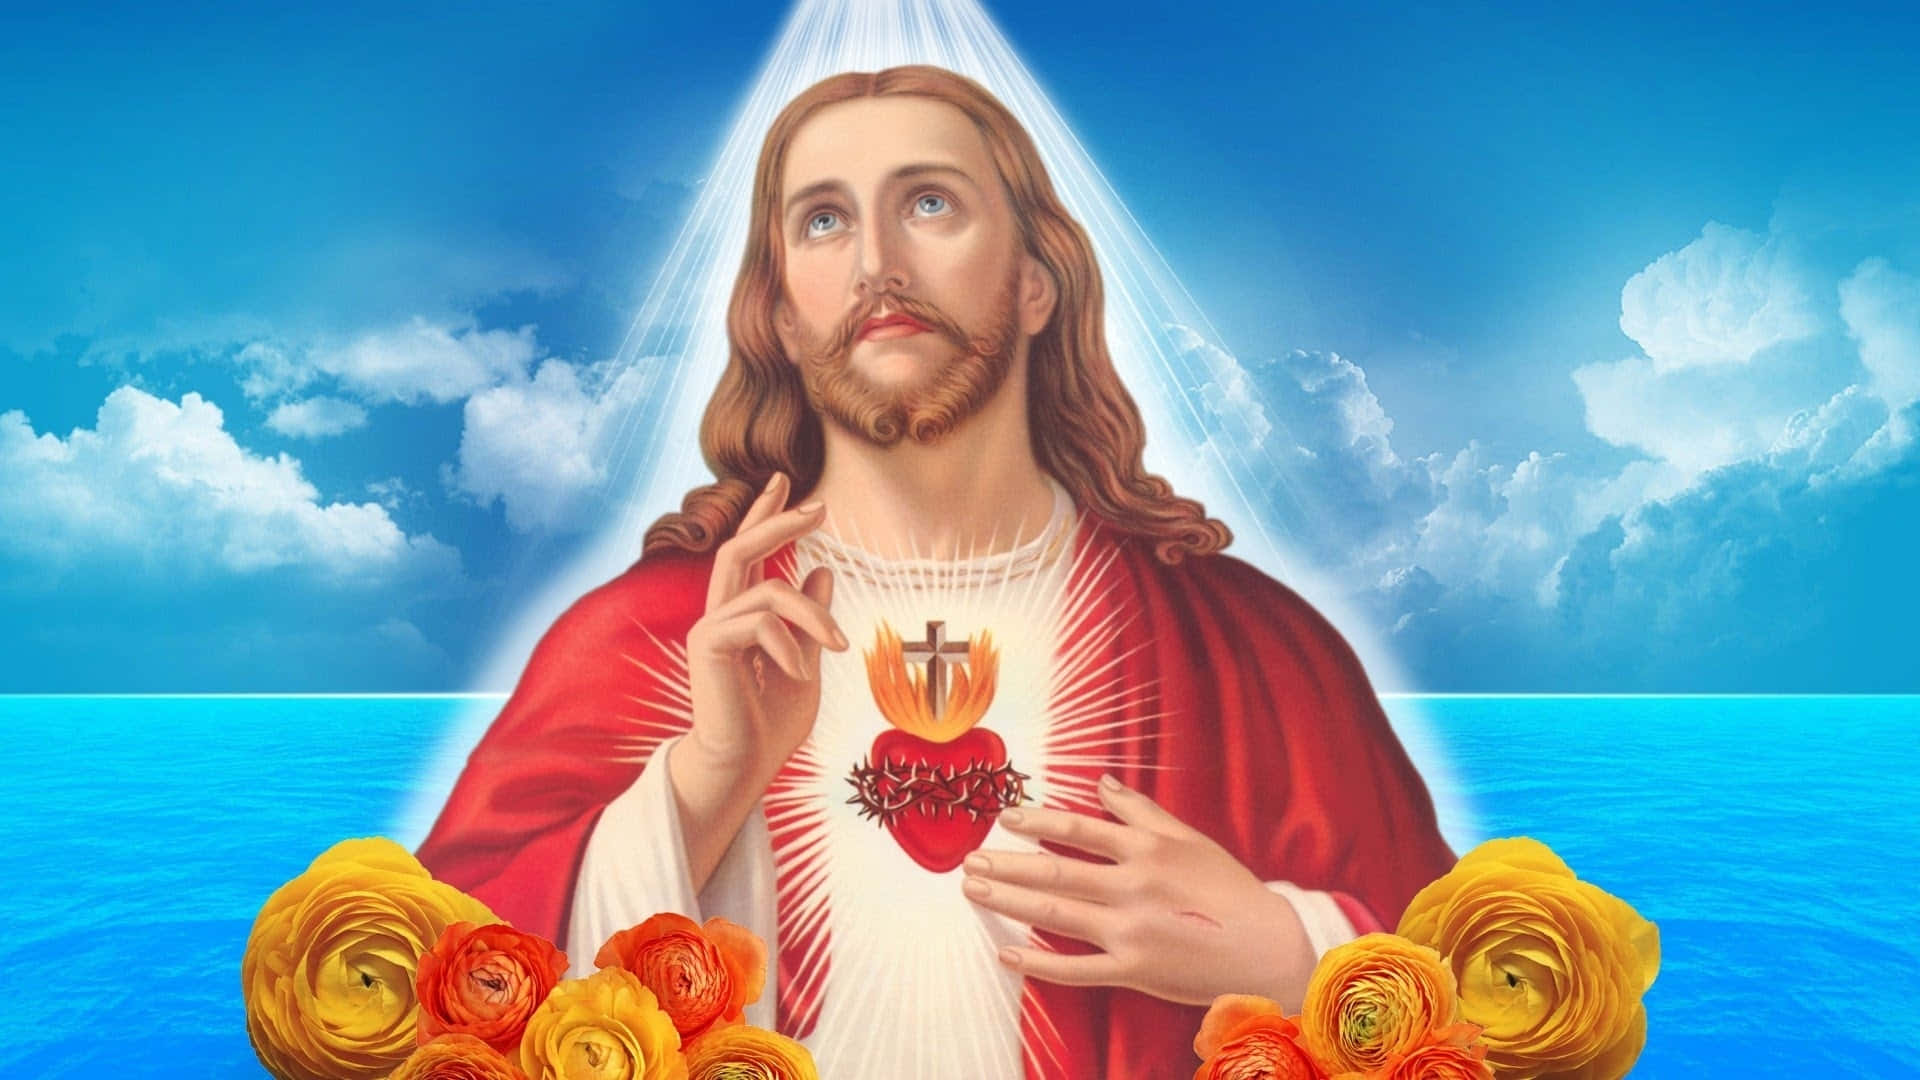 Jesusno Céu Poster Do Sagrado Coração. Papel de Parede